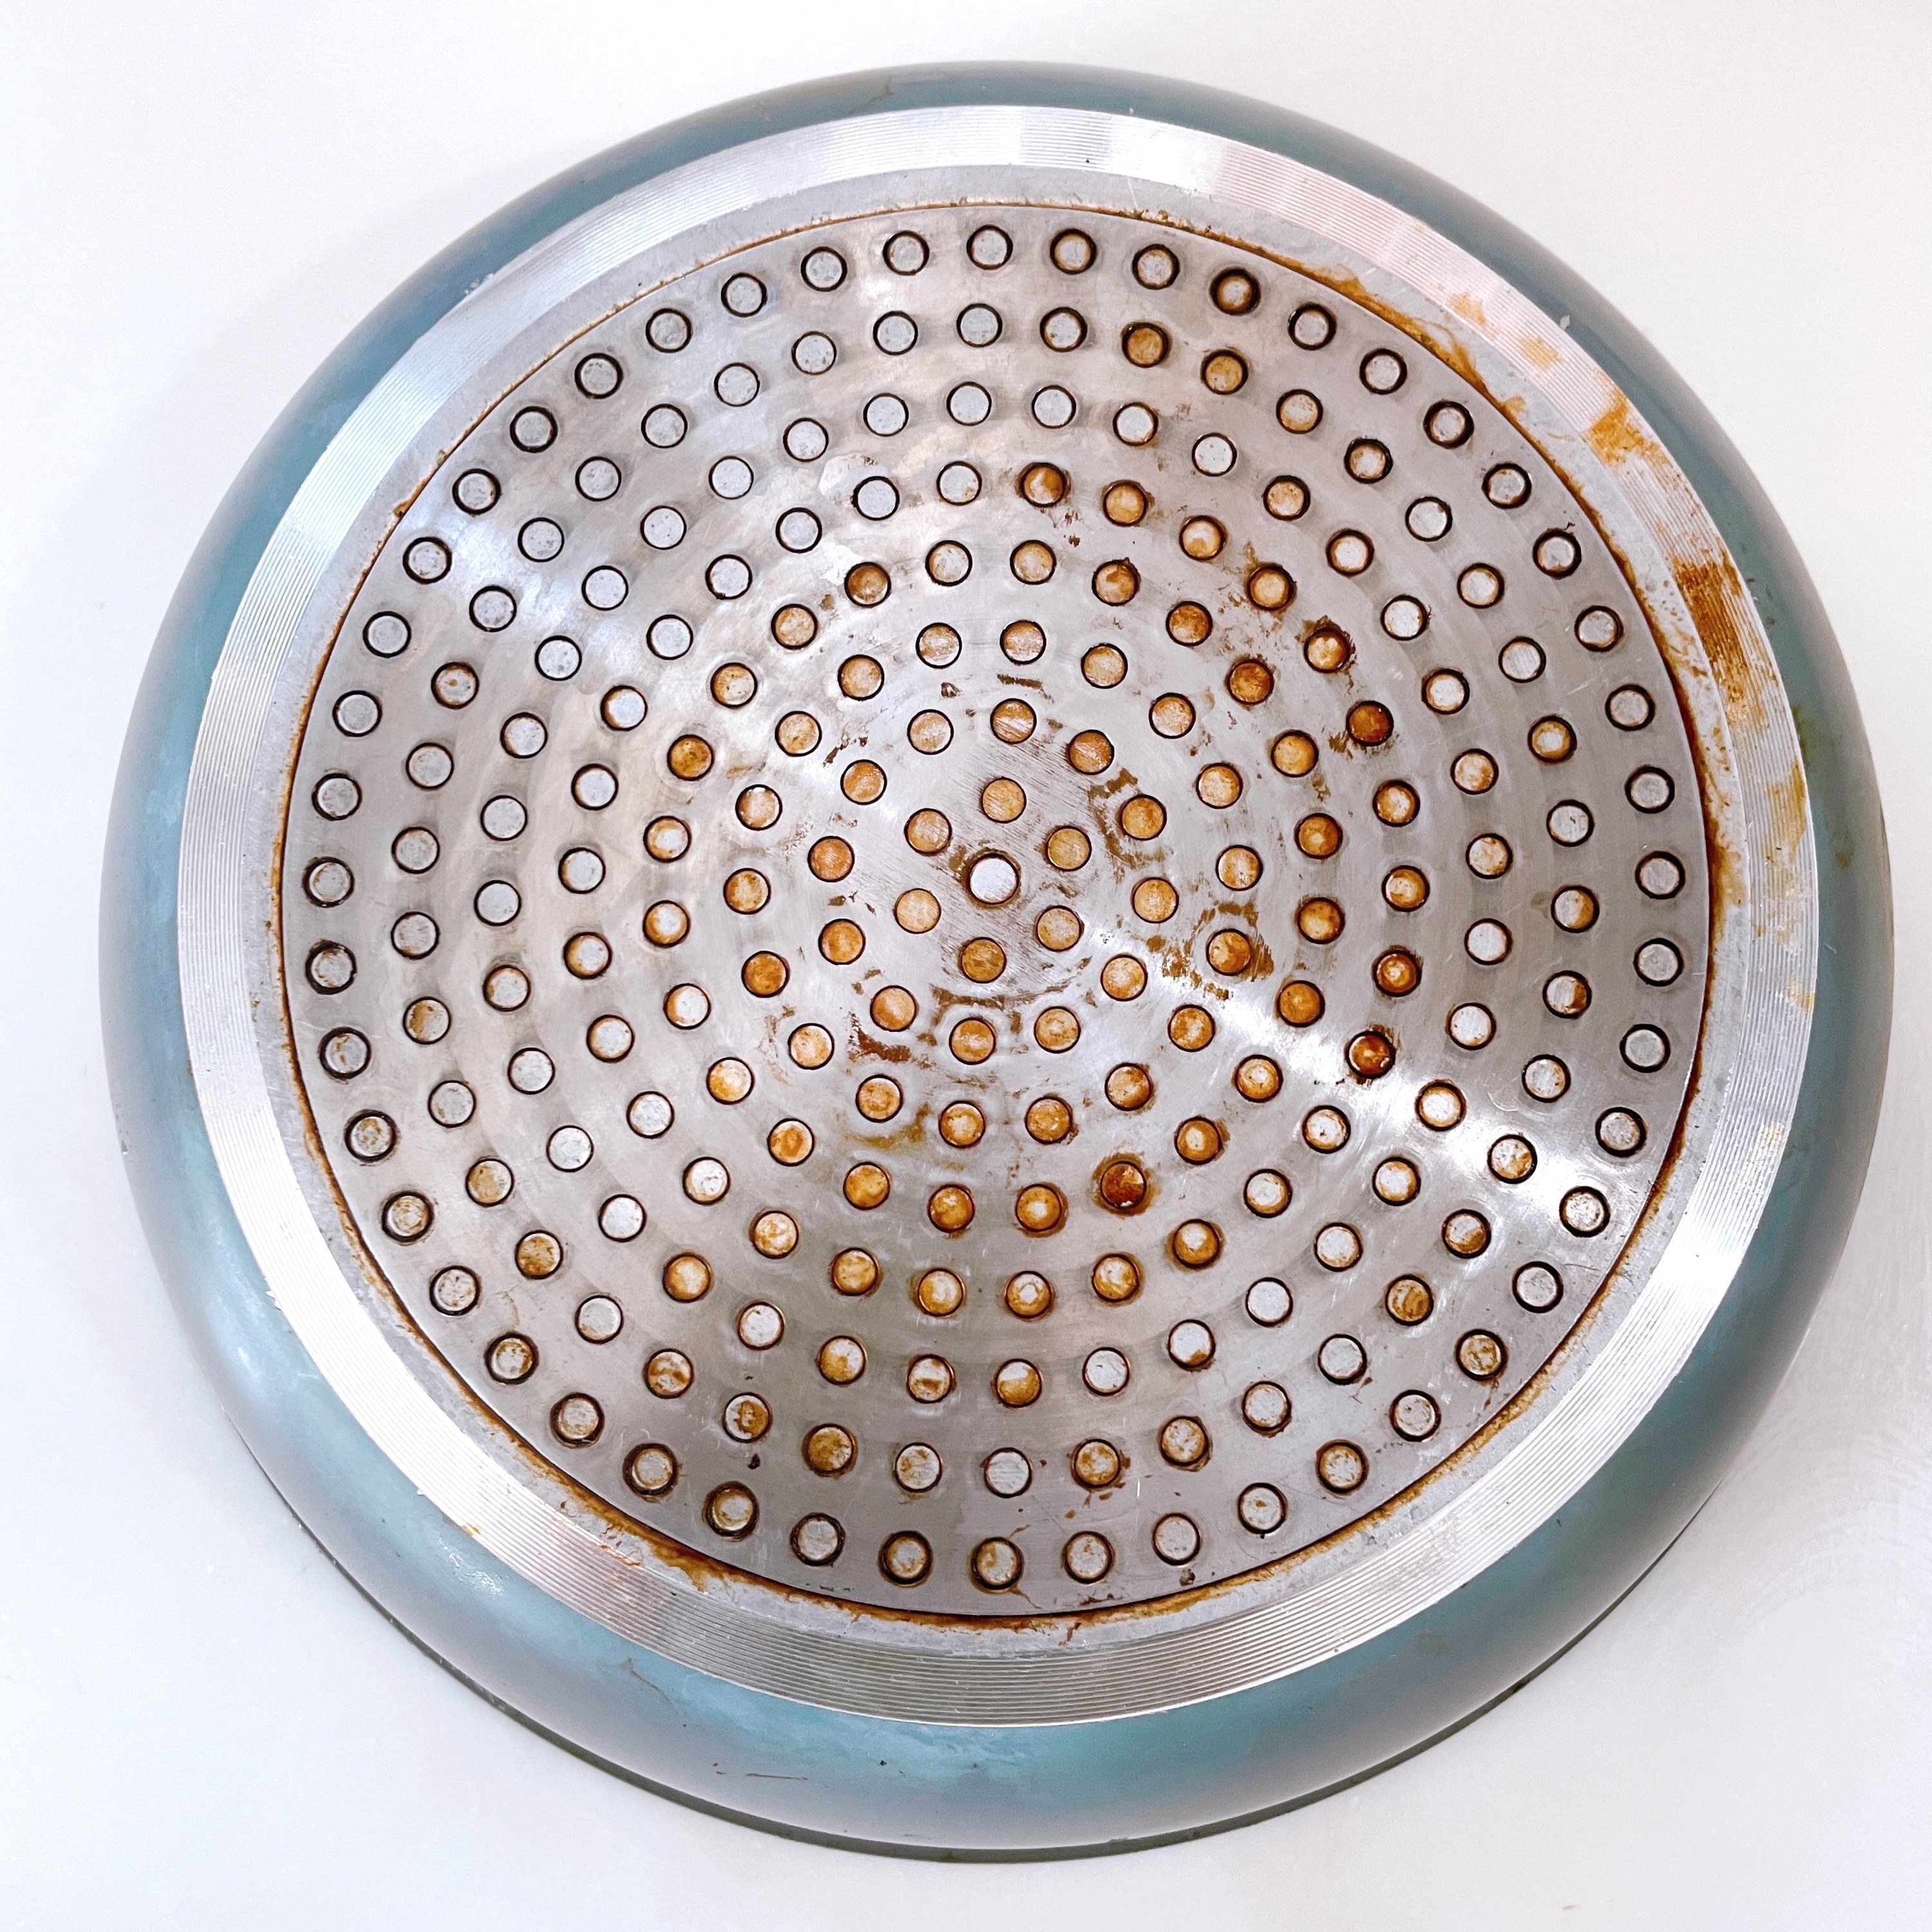 CAINZ（カインズ）のおすすめキッチン掃除用品「水をつけて擦るだけ キッチンのコゲおとし スティック状」